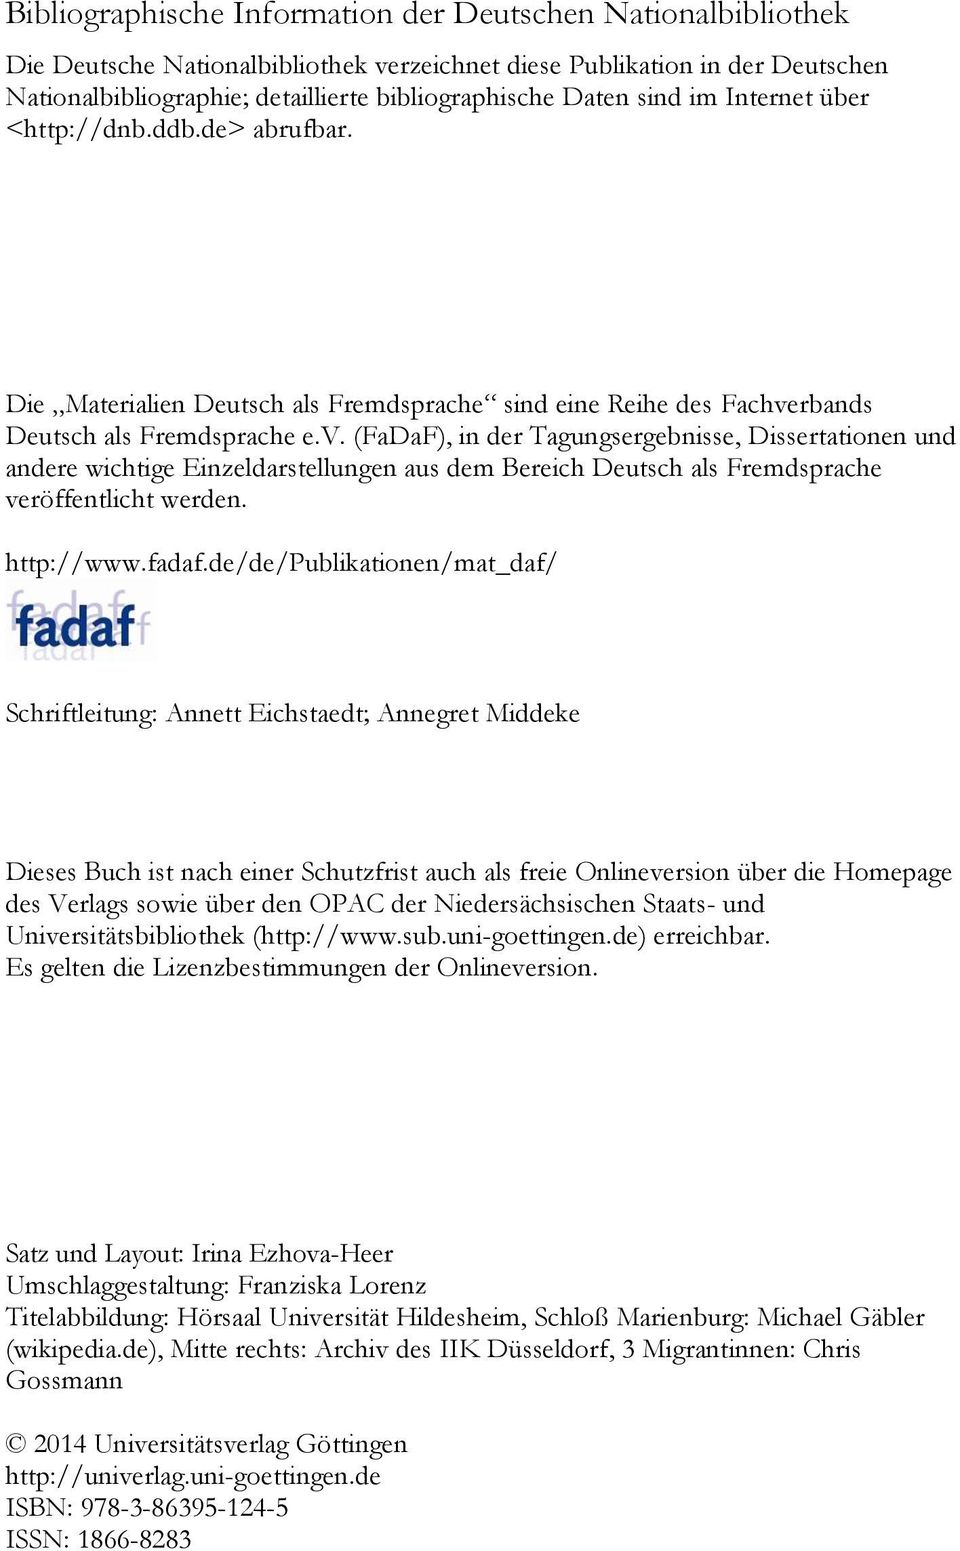 rbands Deutsch als Fremdsprache e.v. (FaDaF), in der Tagungsergebnisse, Dissertationen und andere wichtige Einzeldarstellungen aus dem Bereich Deutsch als Fremdsprache veröffentlicht werden.